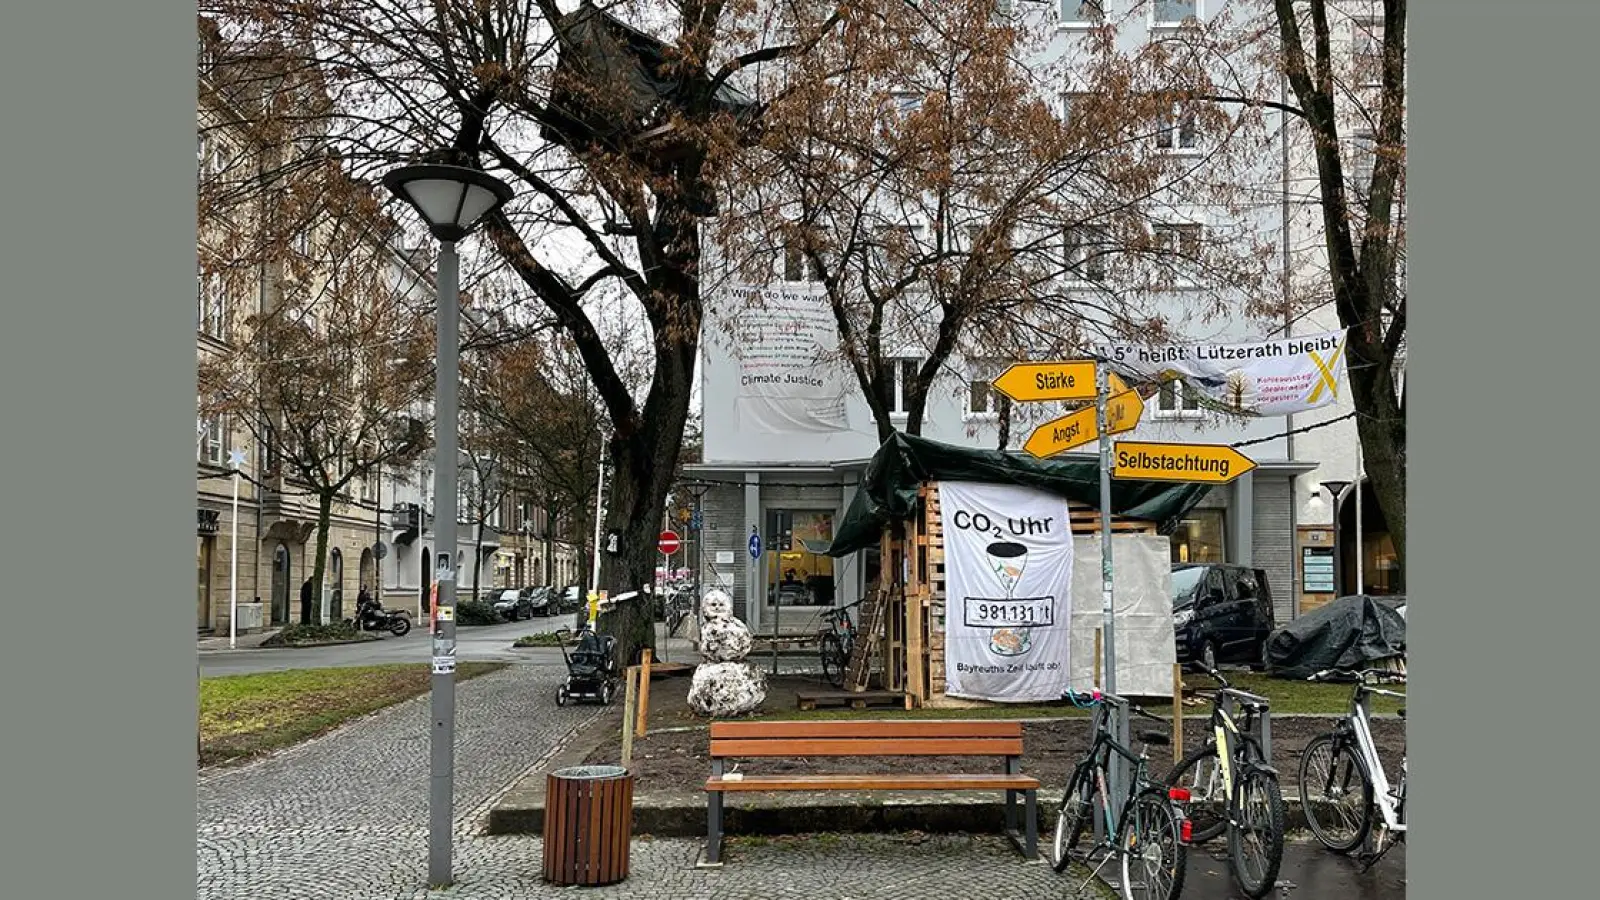 Lokalnachrichten in Bayreuth: Neuer Standort fürs Klimabaumhaus? (Foto: Munzert)